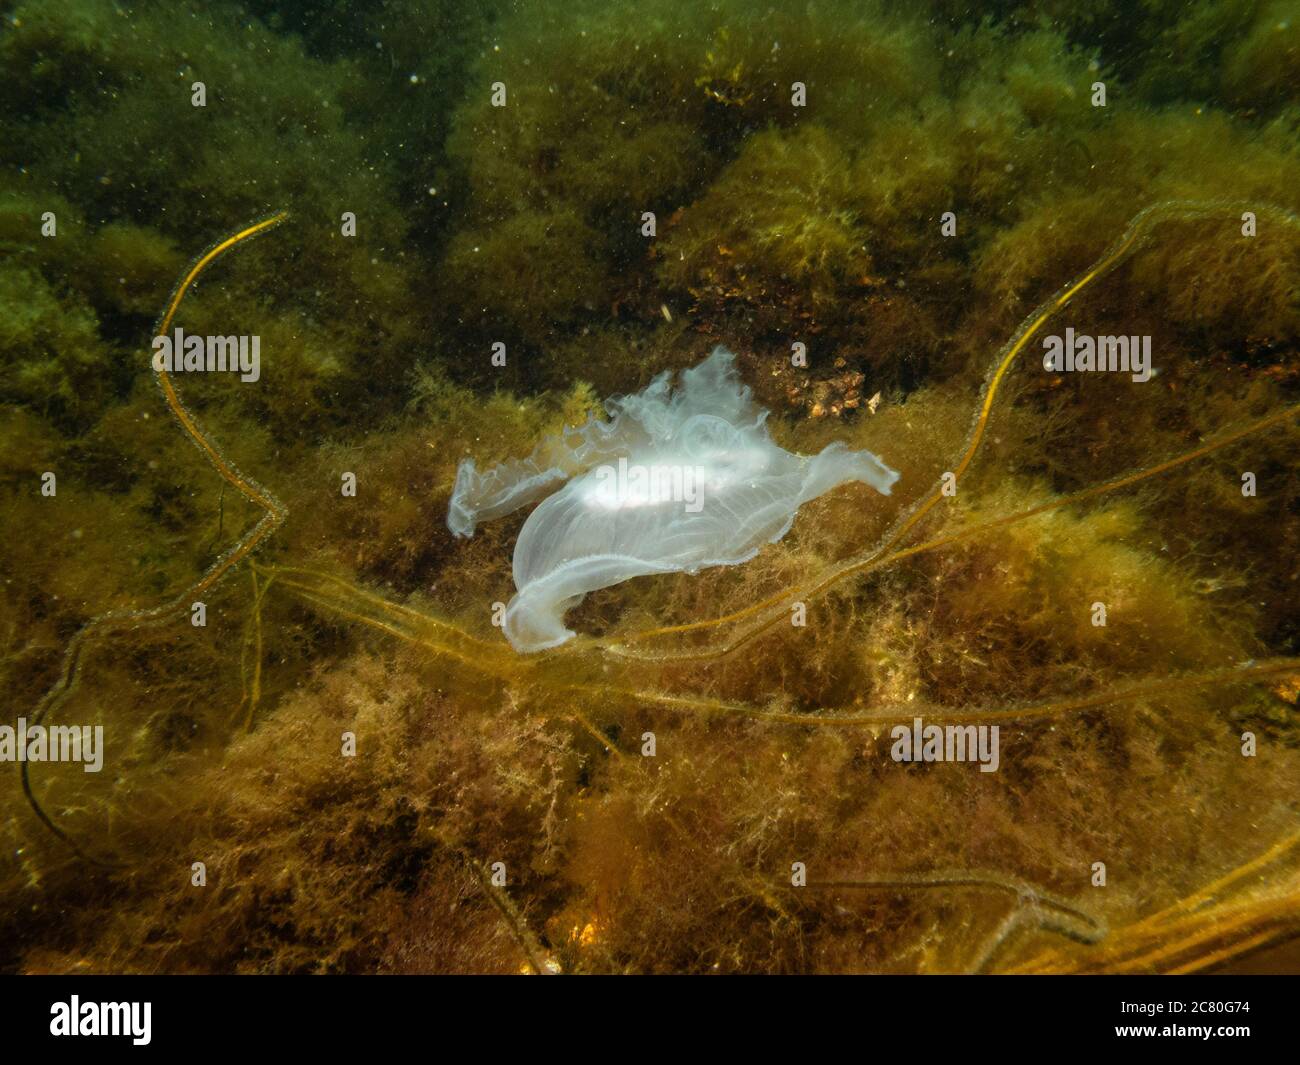 Un méduse apparaît dans un magnifique paysage marin sous-marin. Eau froide verte et algue jaune. Photo d'Oresund, Malmö, dans le sud de la Suède. Banque D'Images